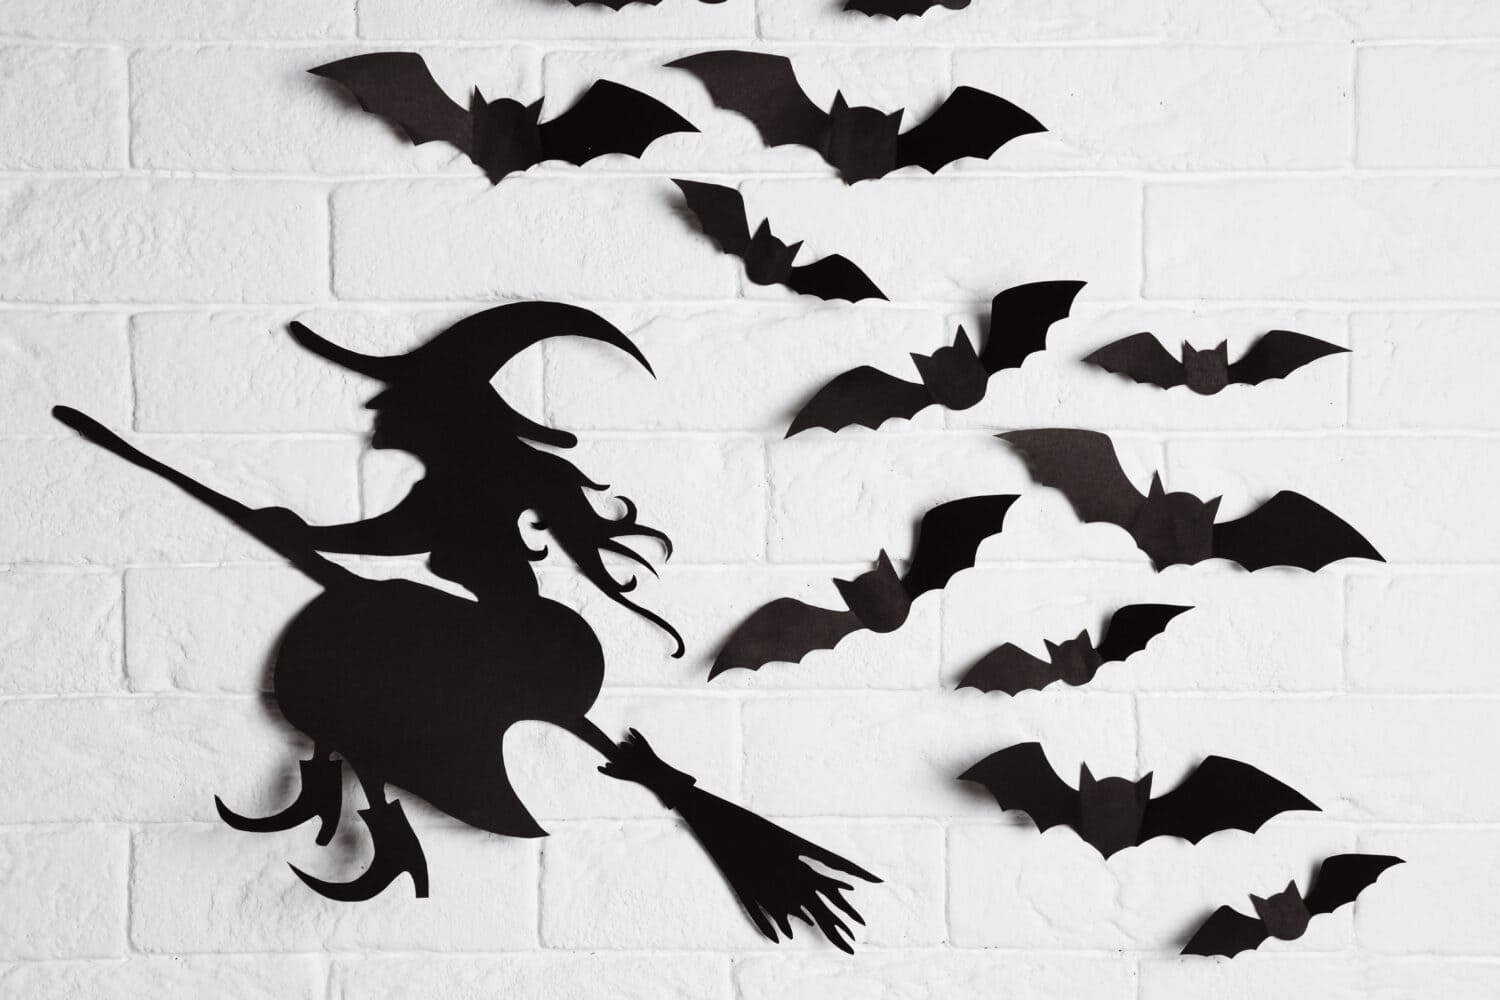 Pipistrelli di carta e ritaglio di streghe sul muro di mattoni.  Arredamento di Halloween